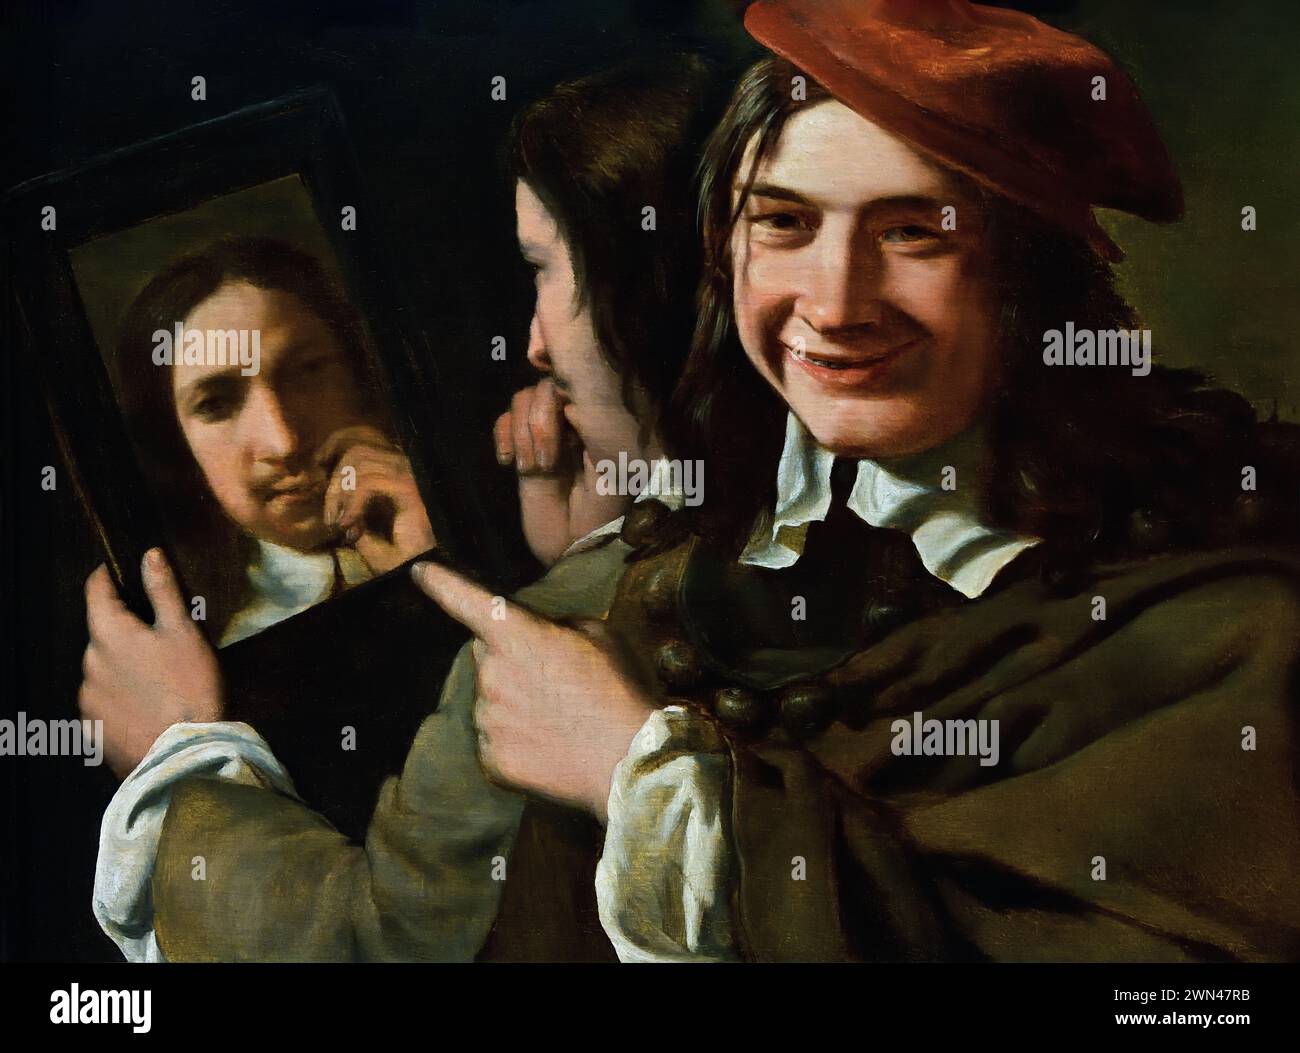 Ein Jugendlicher, der lächelnd und lustig über einen Mann schaut, der sein Spiegelbild in einem Spiegel bewundert - Allegorie der Eitelkeit. Von Michael Sweerts 1618-1664 Königliches Museum der Schönen Künste, Antwerpen, Belgien, Belgien. Stockfoto